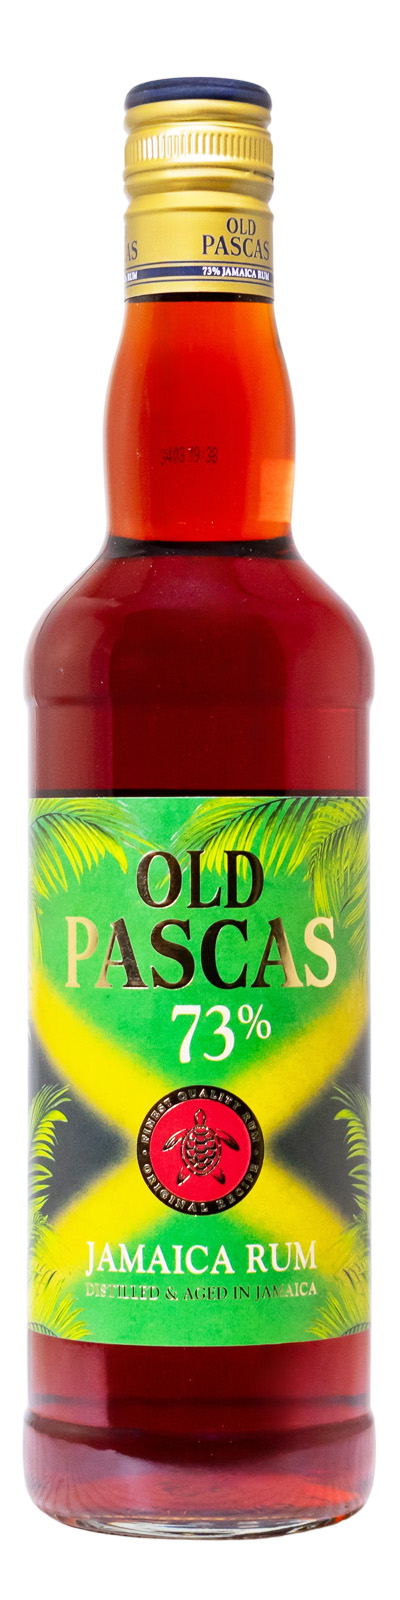 Old Pascas 73 Rum Jamaica Dark - 0,7L 73% vol